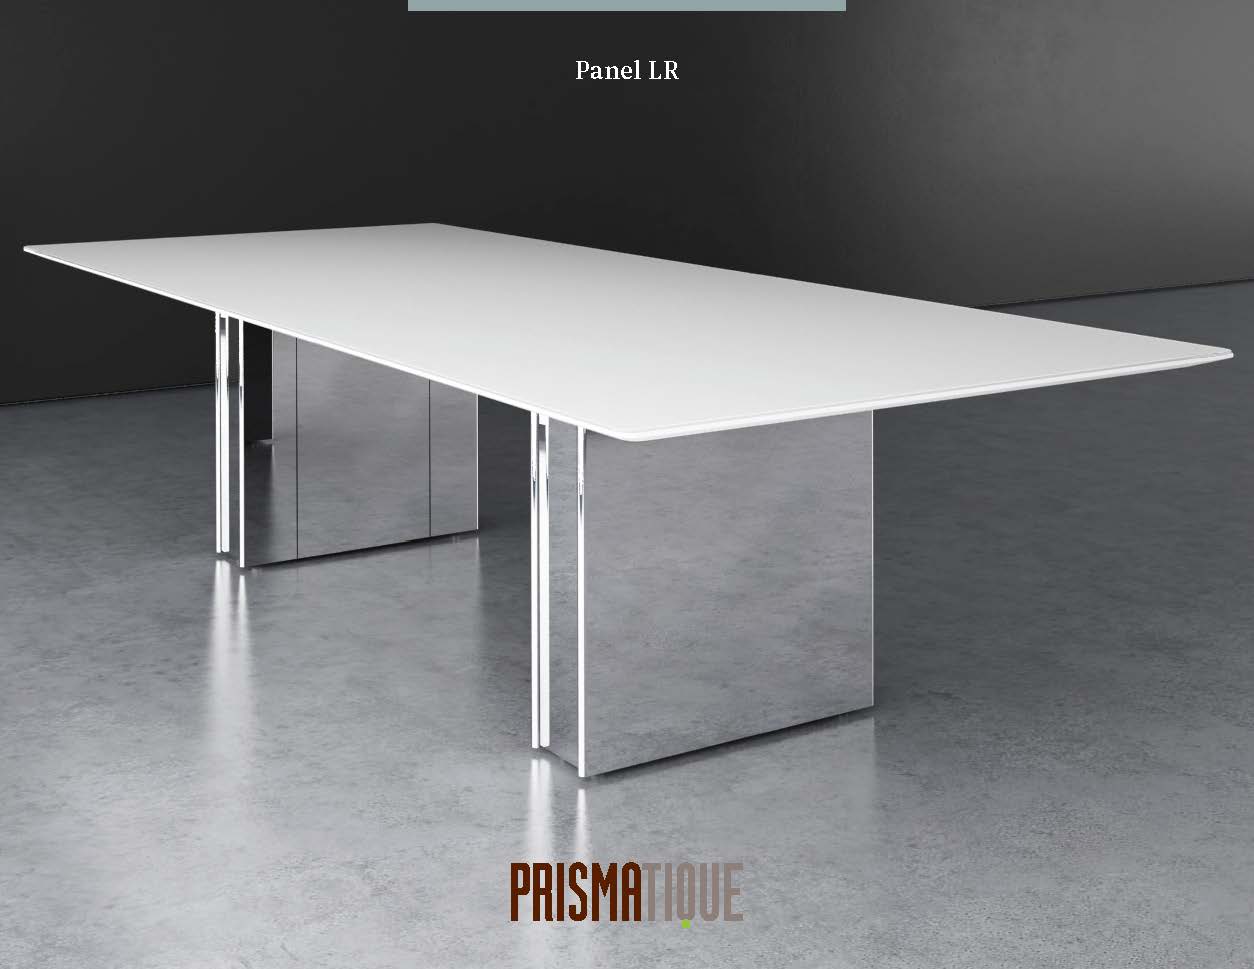 Prismatique Catalog_Panel LR Brochure Cover